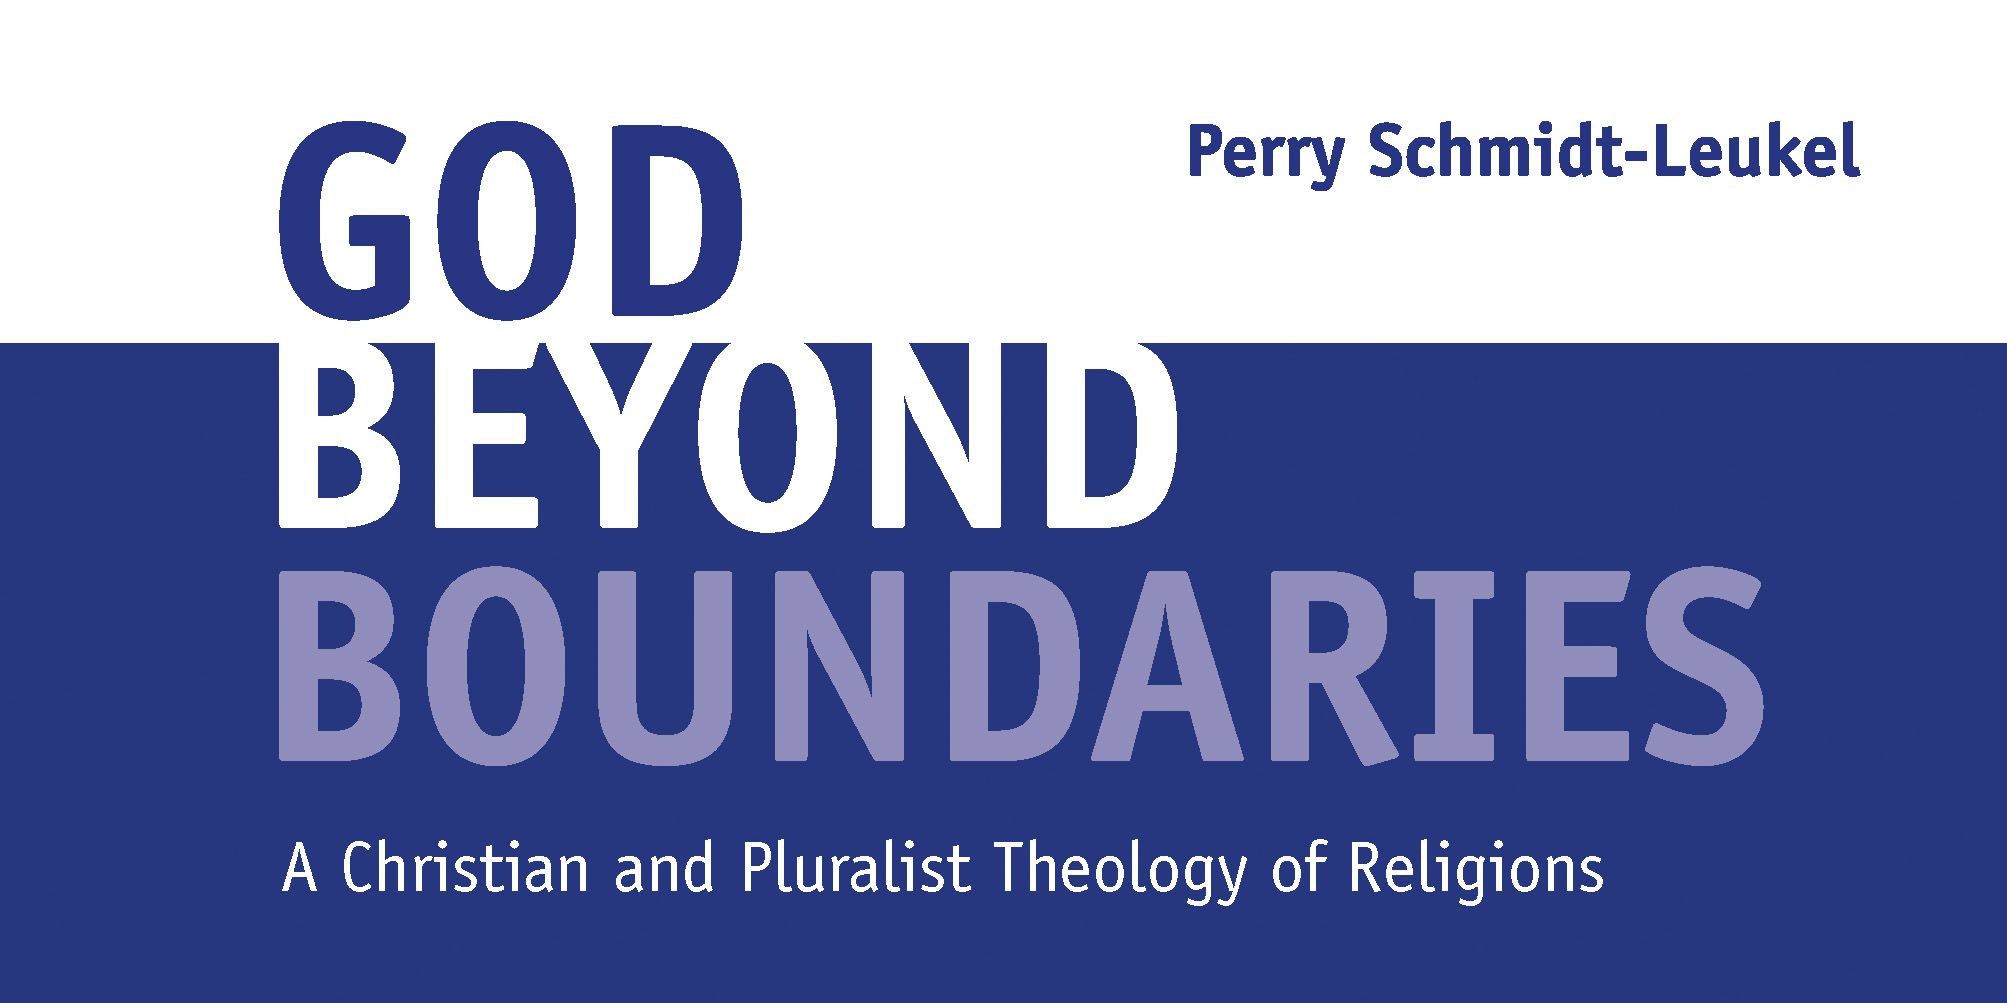 News Buch Schmidt-leukel God Beyond Boundaries 2 1